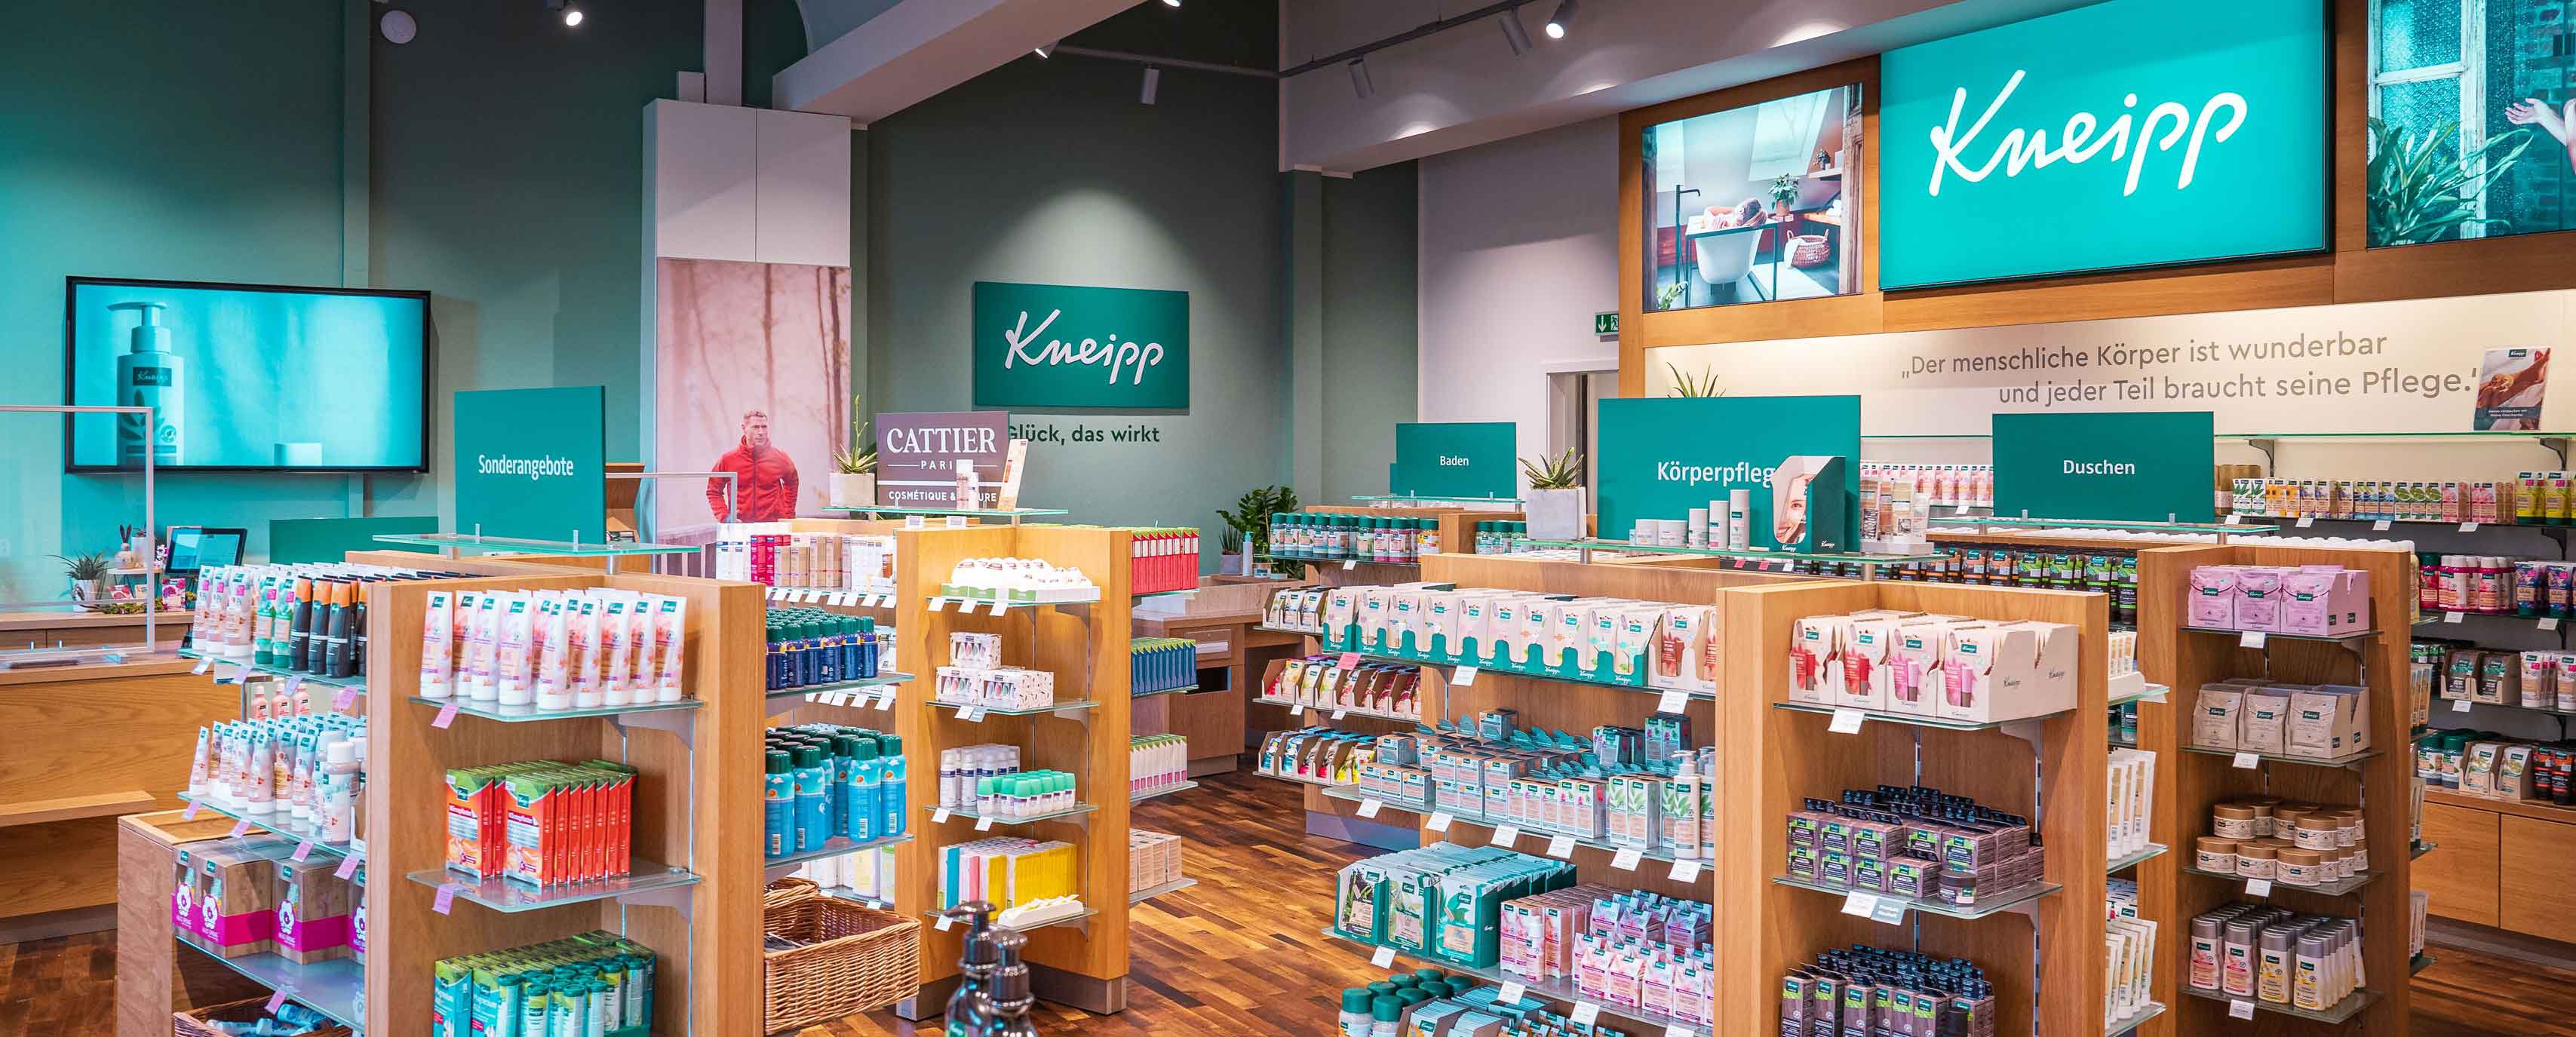 Kneipp Shop Ochtrup